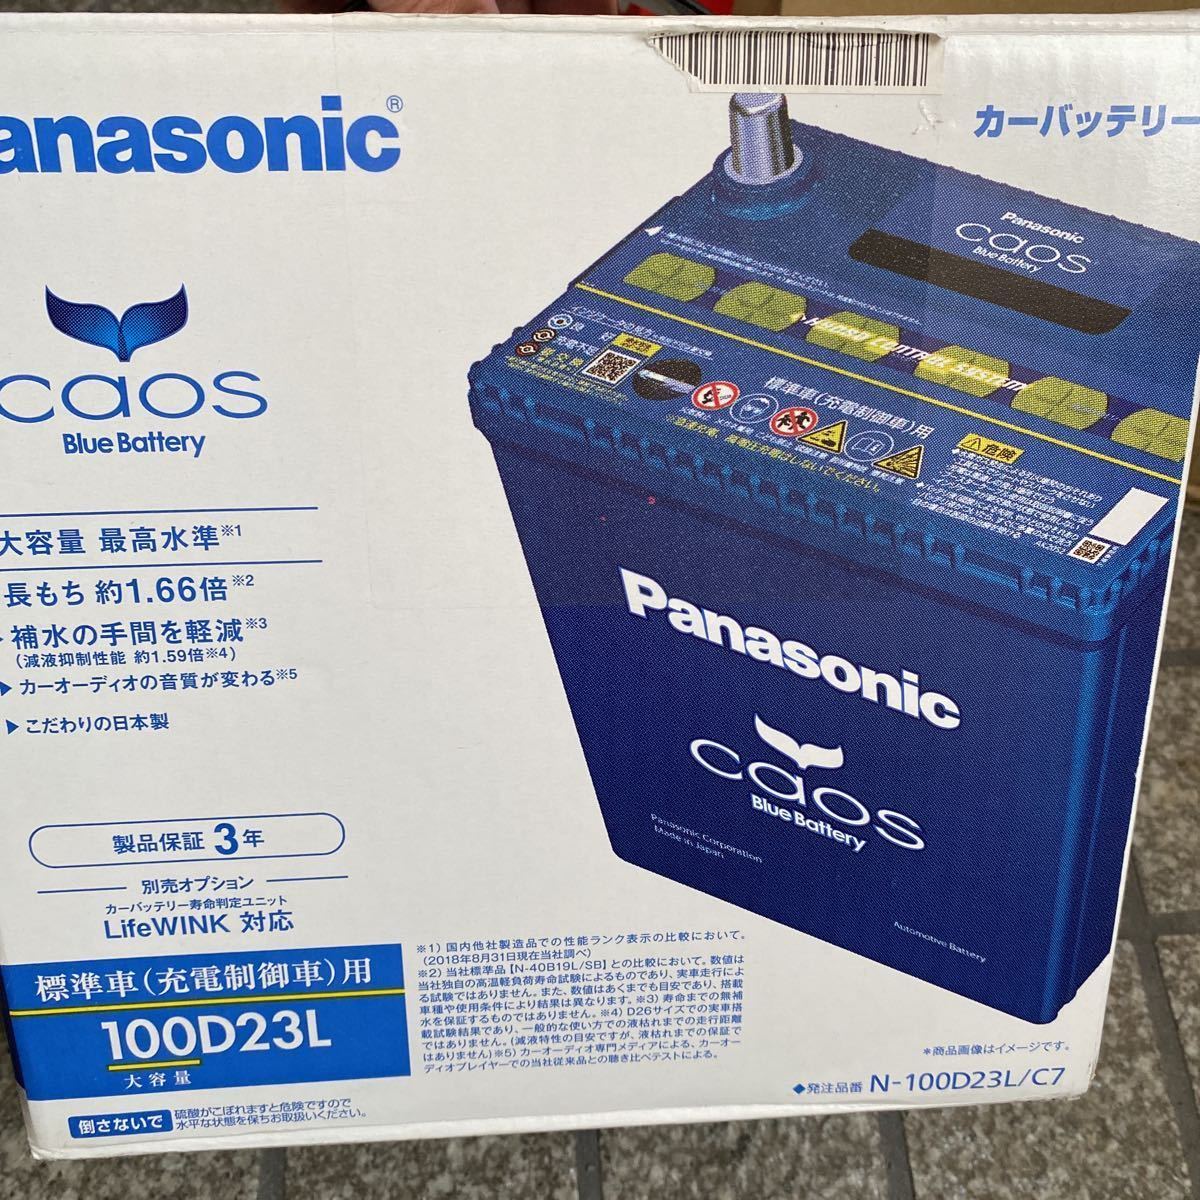 お買い得HOT PANASONIC カオス C7 国産車用バッテリー N-80B24L/C7